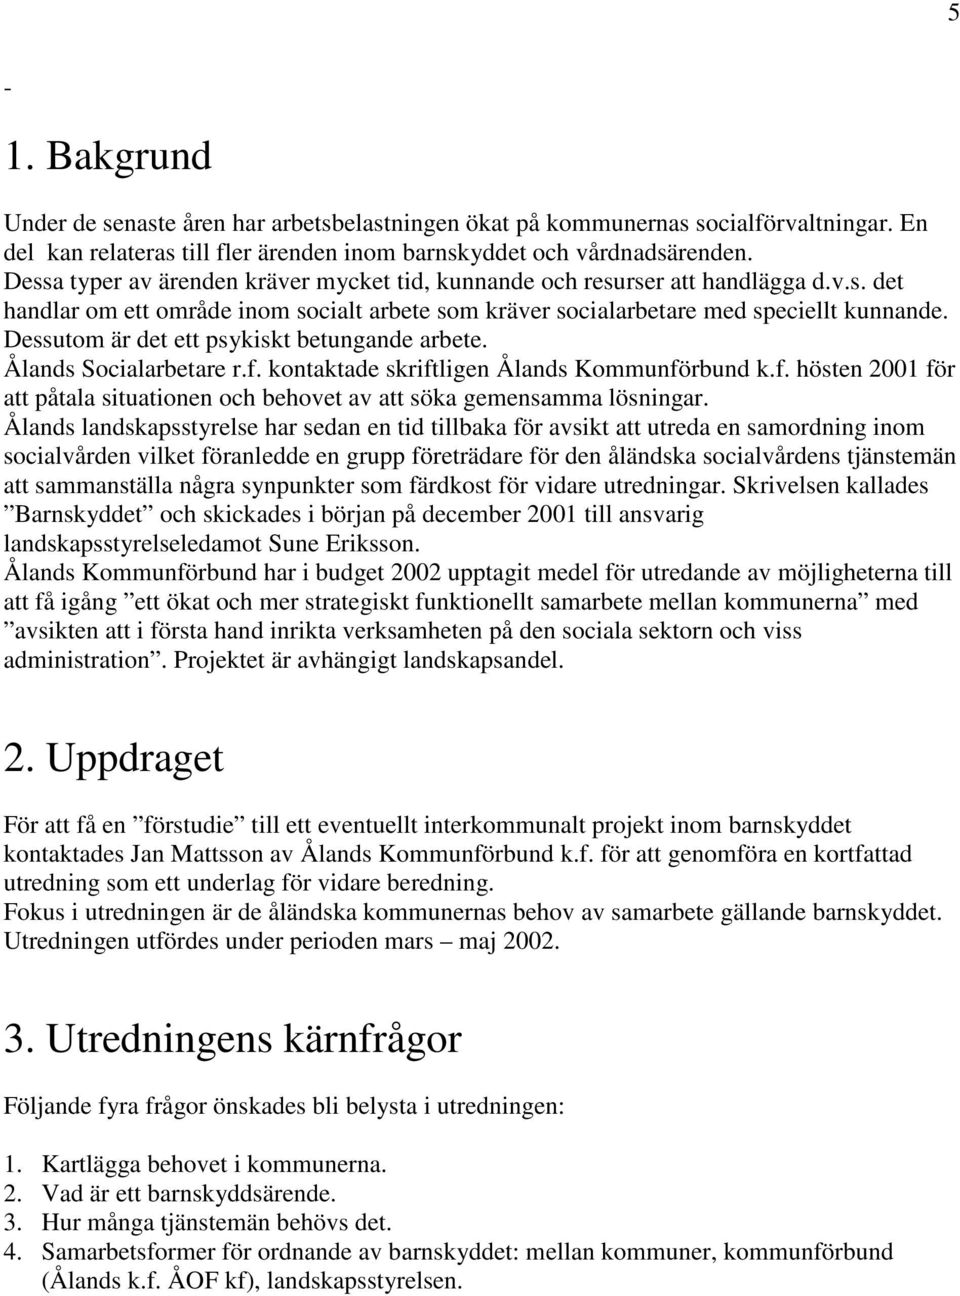 Dessutom är det ett psykiskt betungande arbete. Ålands Socialarbetare r.f. kontaktade skriftligen Ålands Kommunförbund k.f. hösten 2001 för att påtala situationen och behovet av att söka gemensamma lösningar.